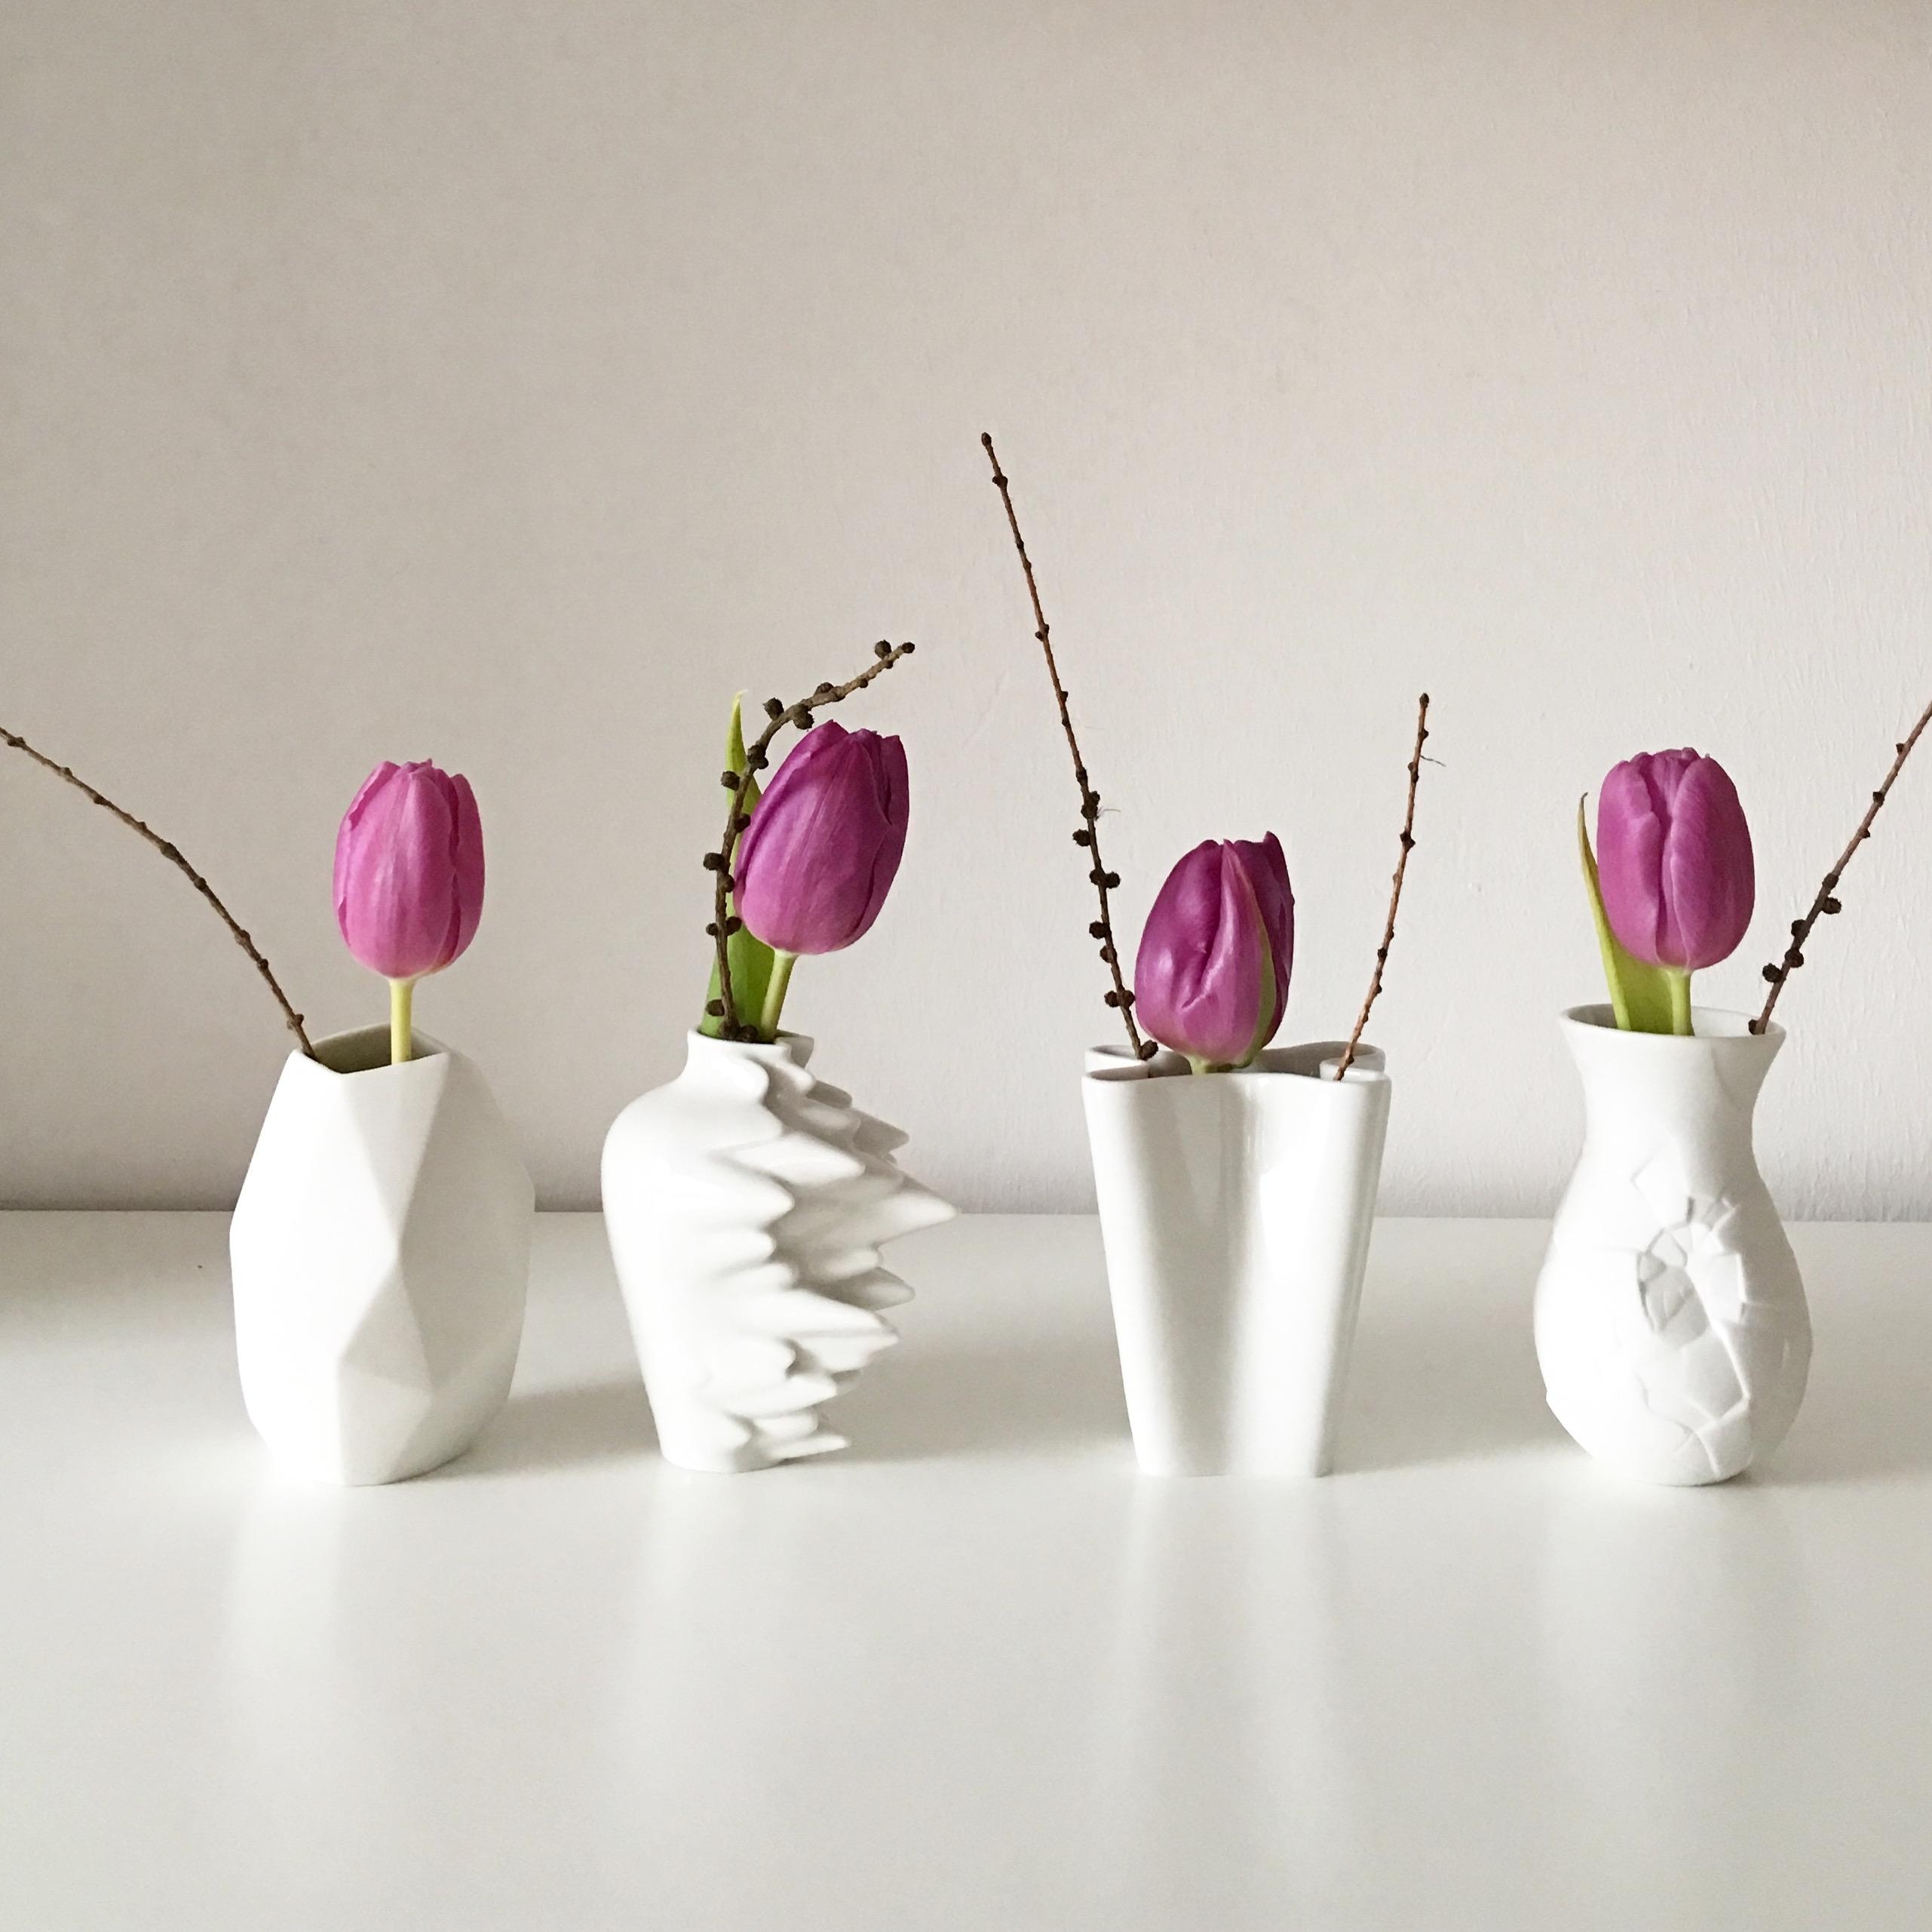 #dekoidee #tulpenliebe #frühling #vasenliebe #dekoration #zuhauseistesamschönsten 